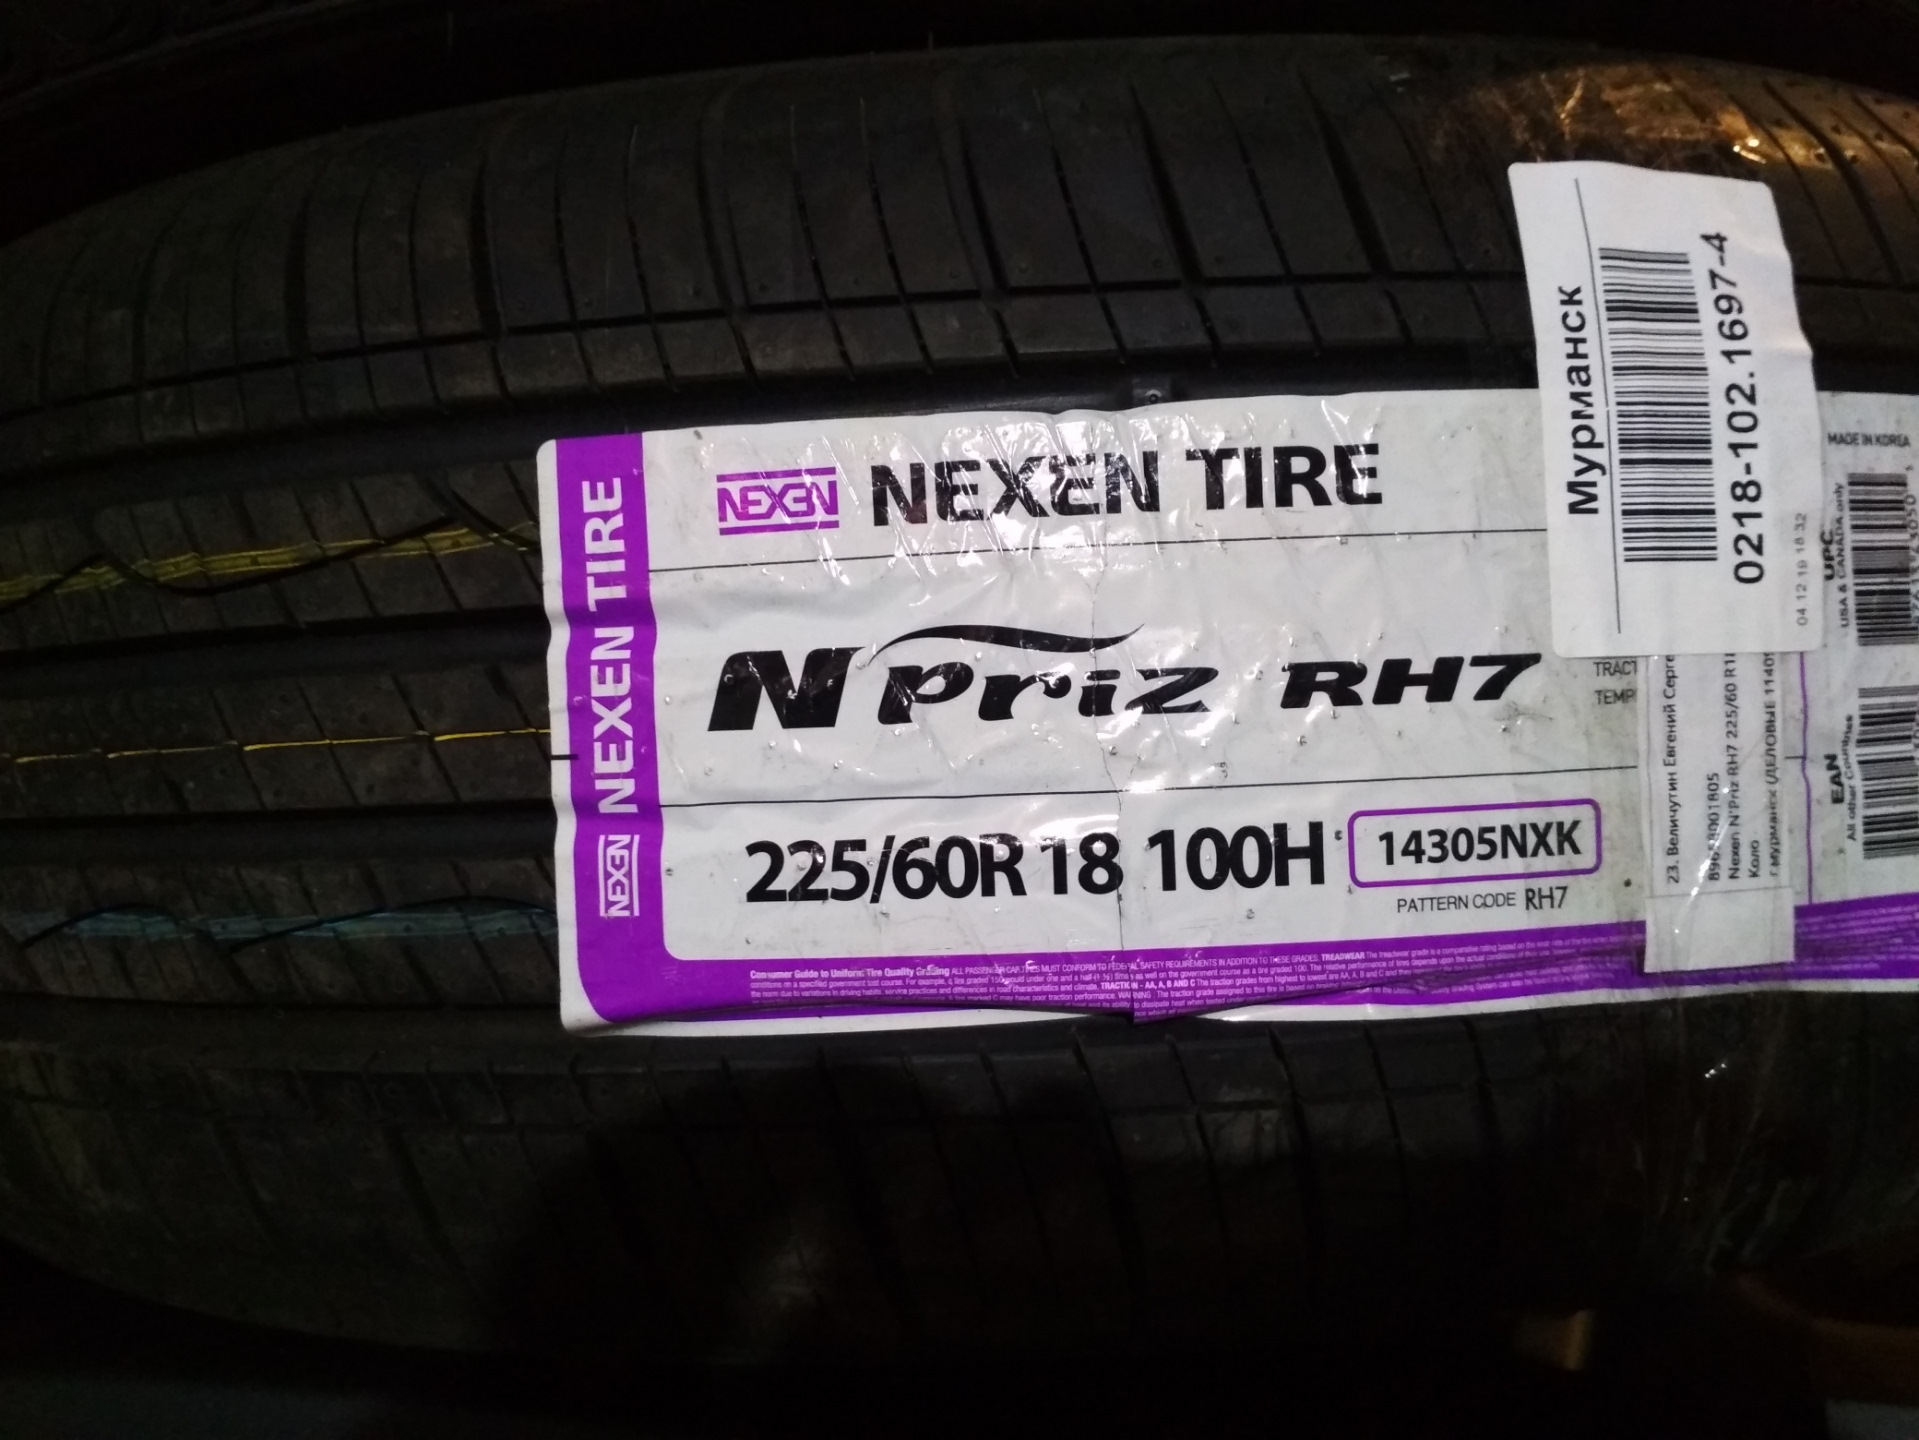 Nexen шины производство страна производитель. Outlander XL резина r16 225/60. Заводские шины Аутлендер ХЛ 18 размер. Nexen rh7. 225/60 R18 диаметр.